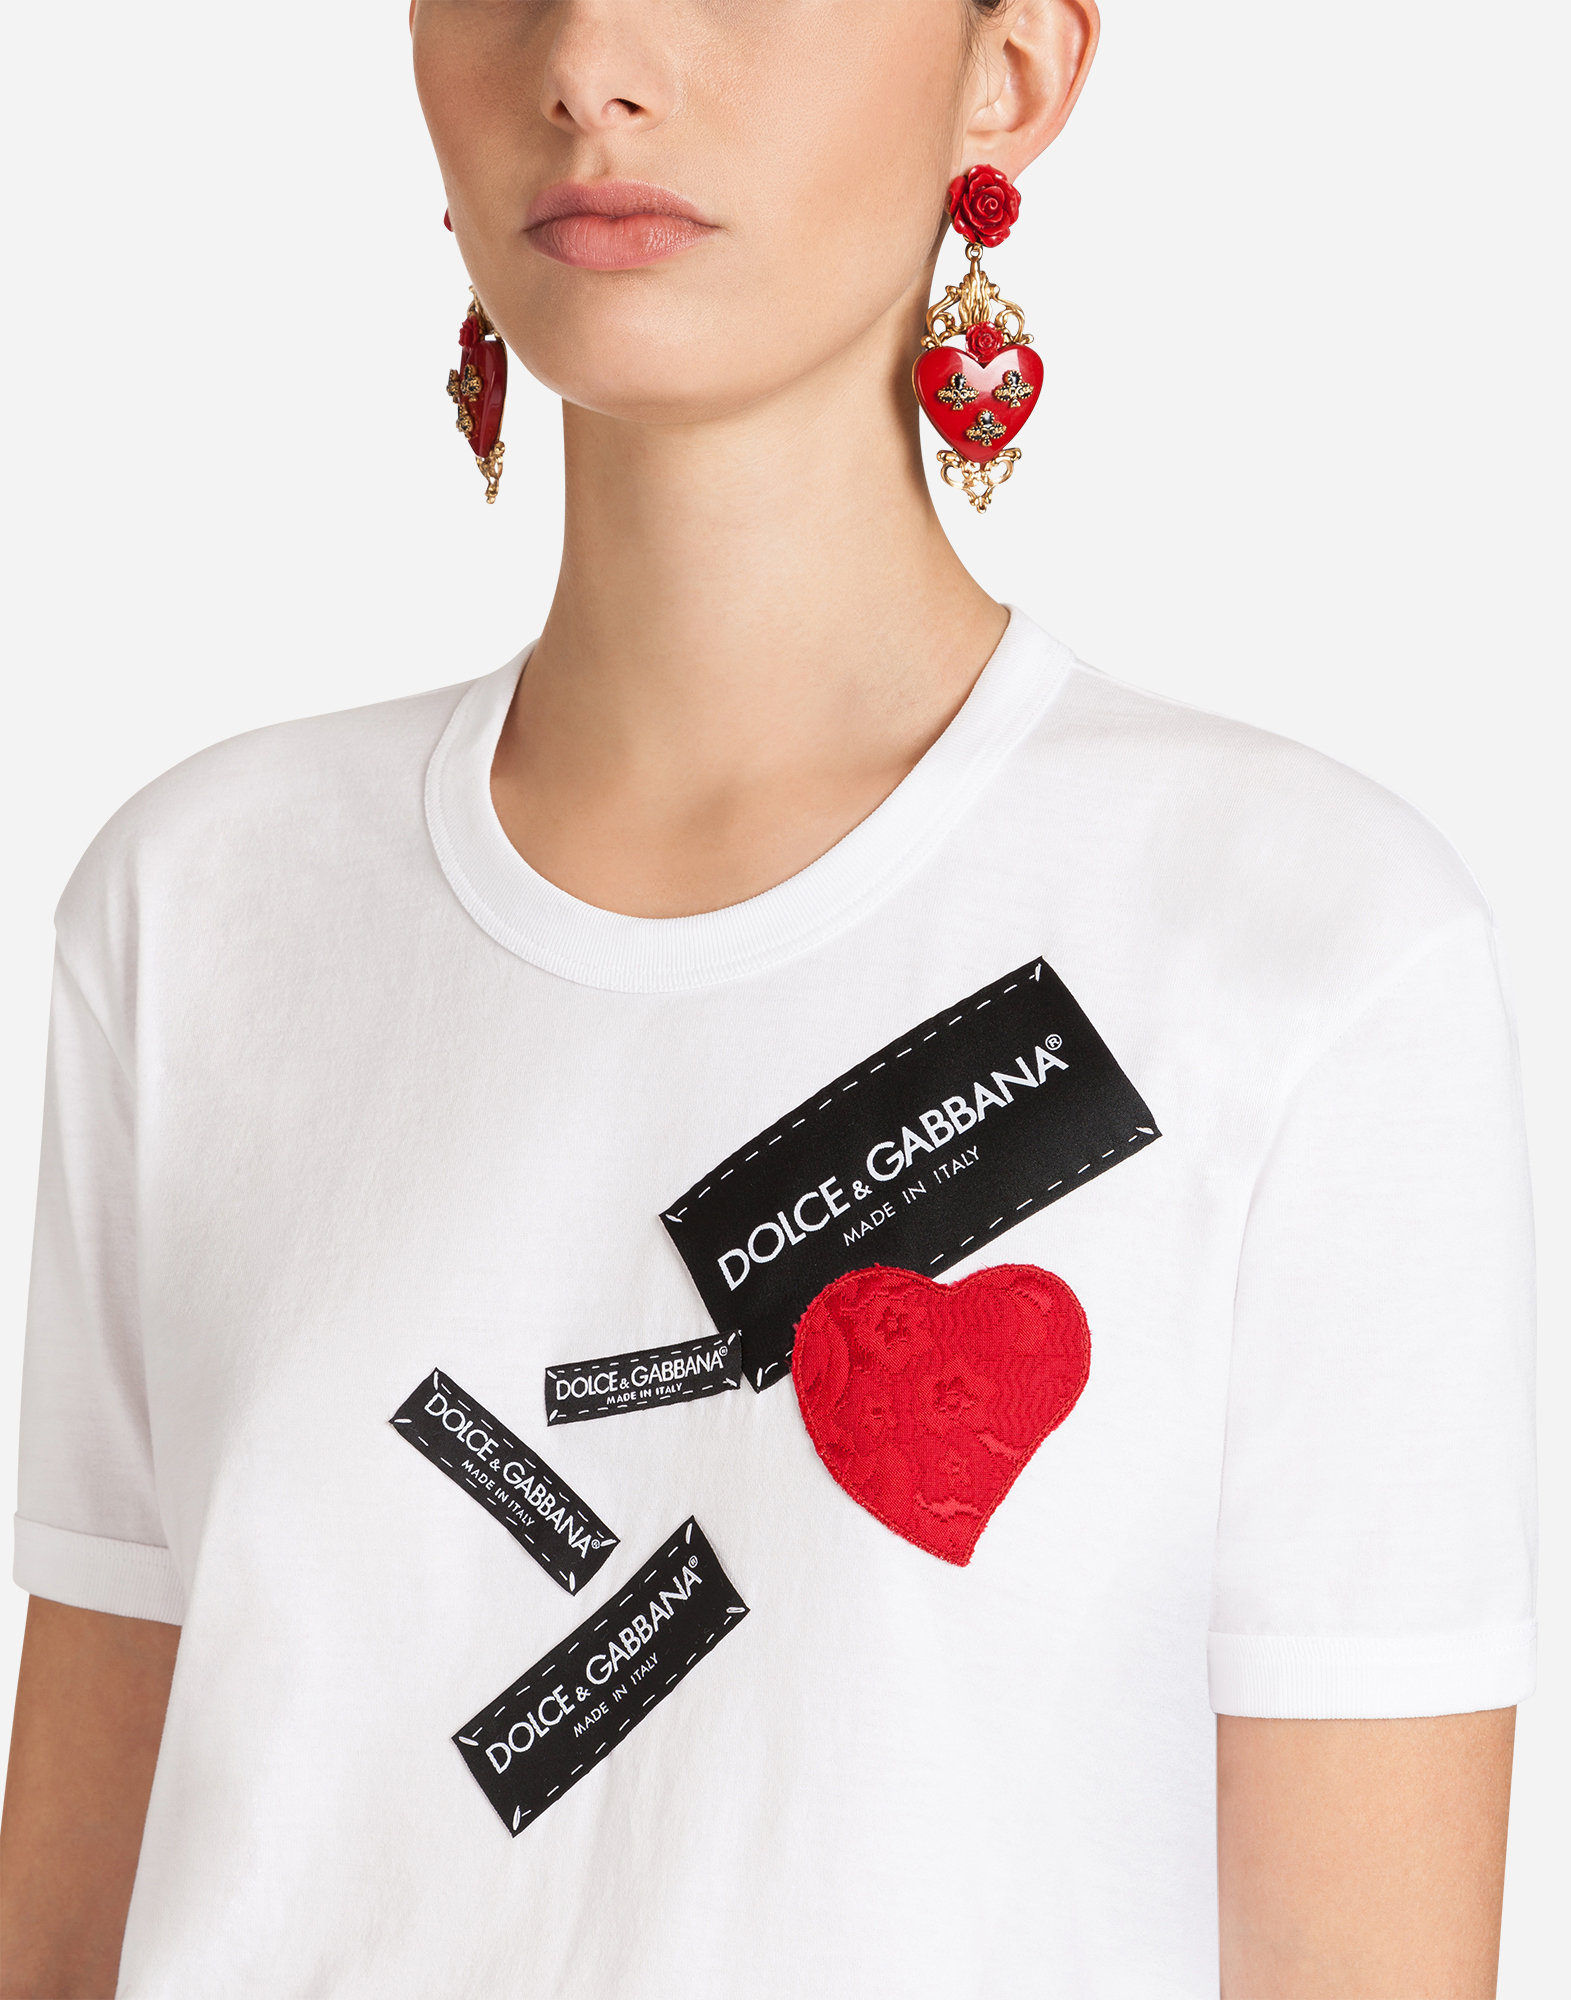 dolce gabbana women's t shirt sale